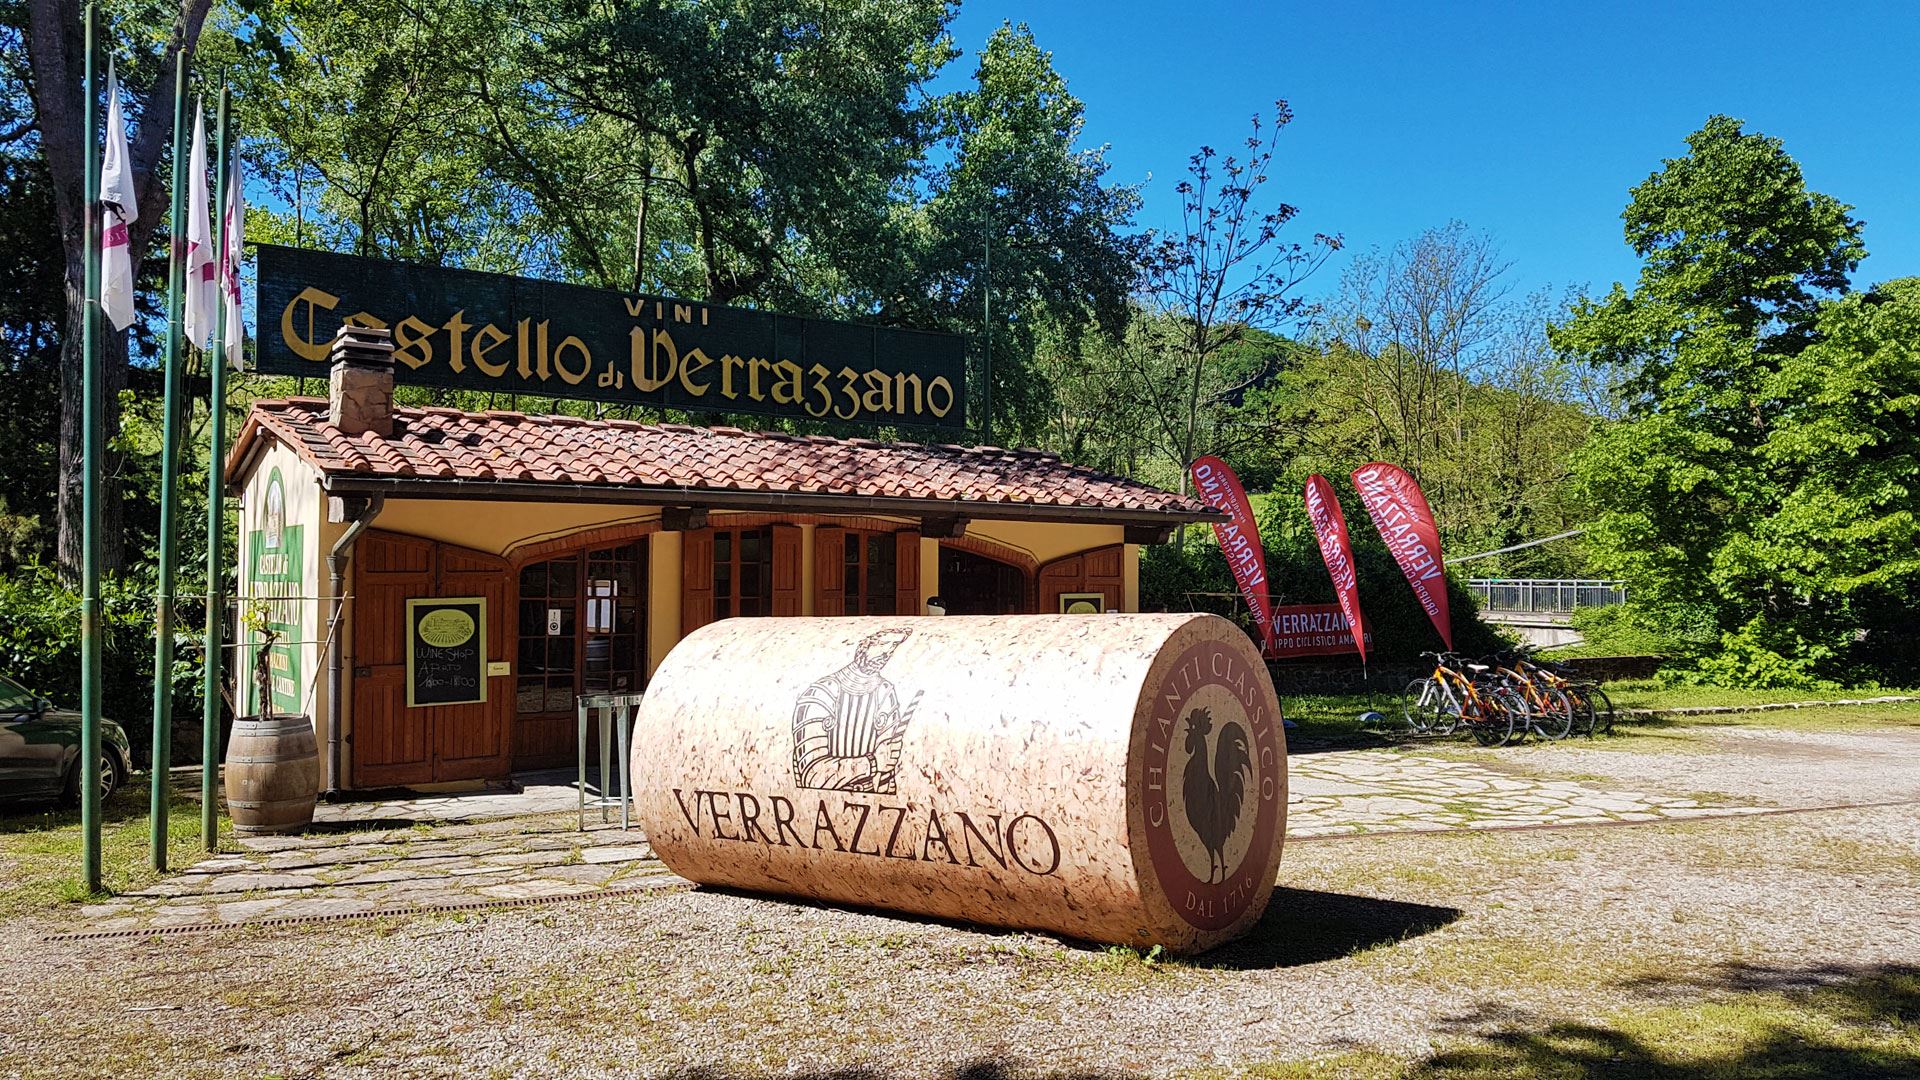 Castello di Verrazzano - explorer's castle and wine estate